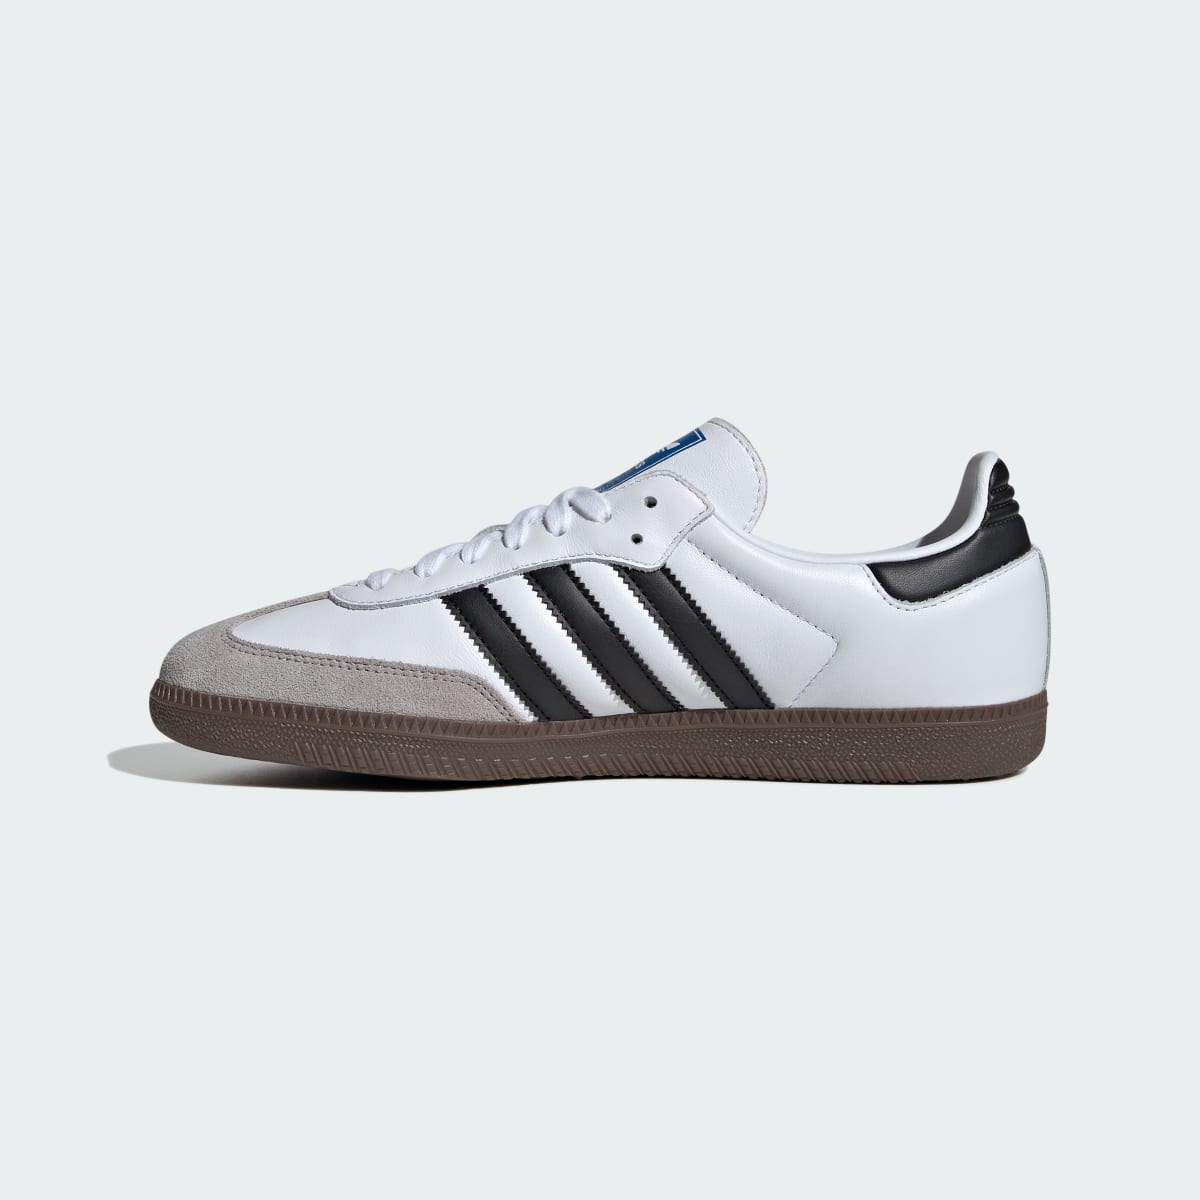 Adidas Samba OG Ayakkabı. 11